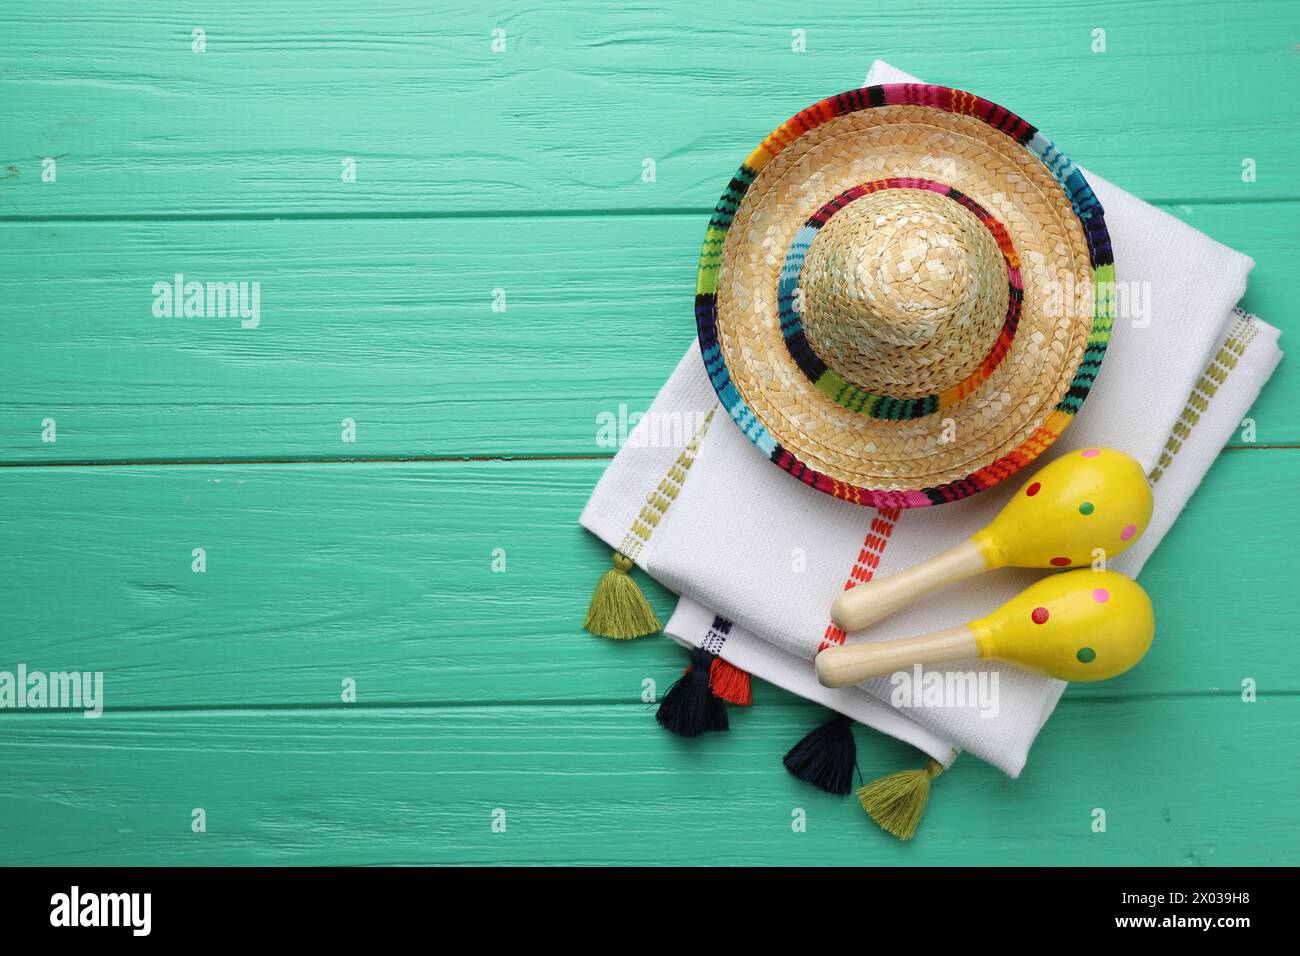 Chapeau sombrero mexicain, maracas et poncho sur table en bois turquoise, pose à plat. Espace pour le texte Banque D'Images